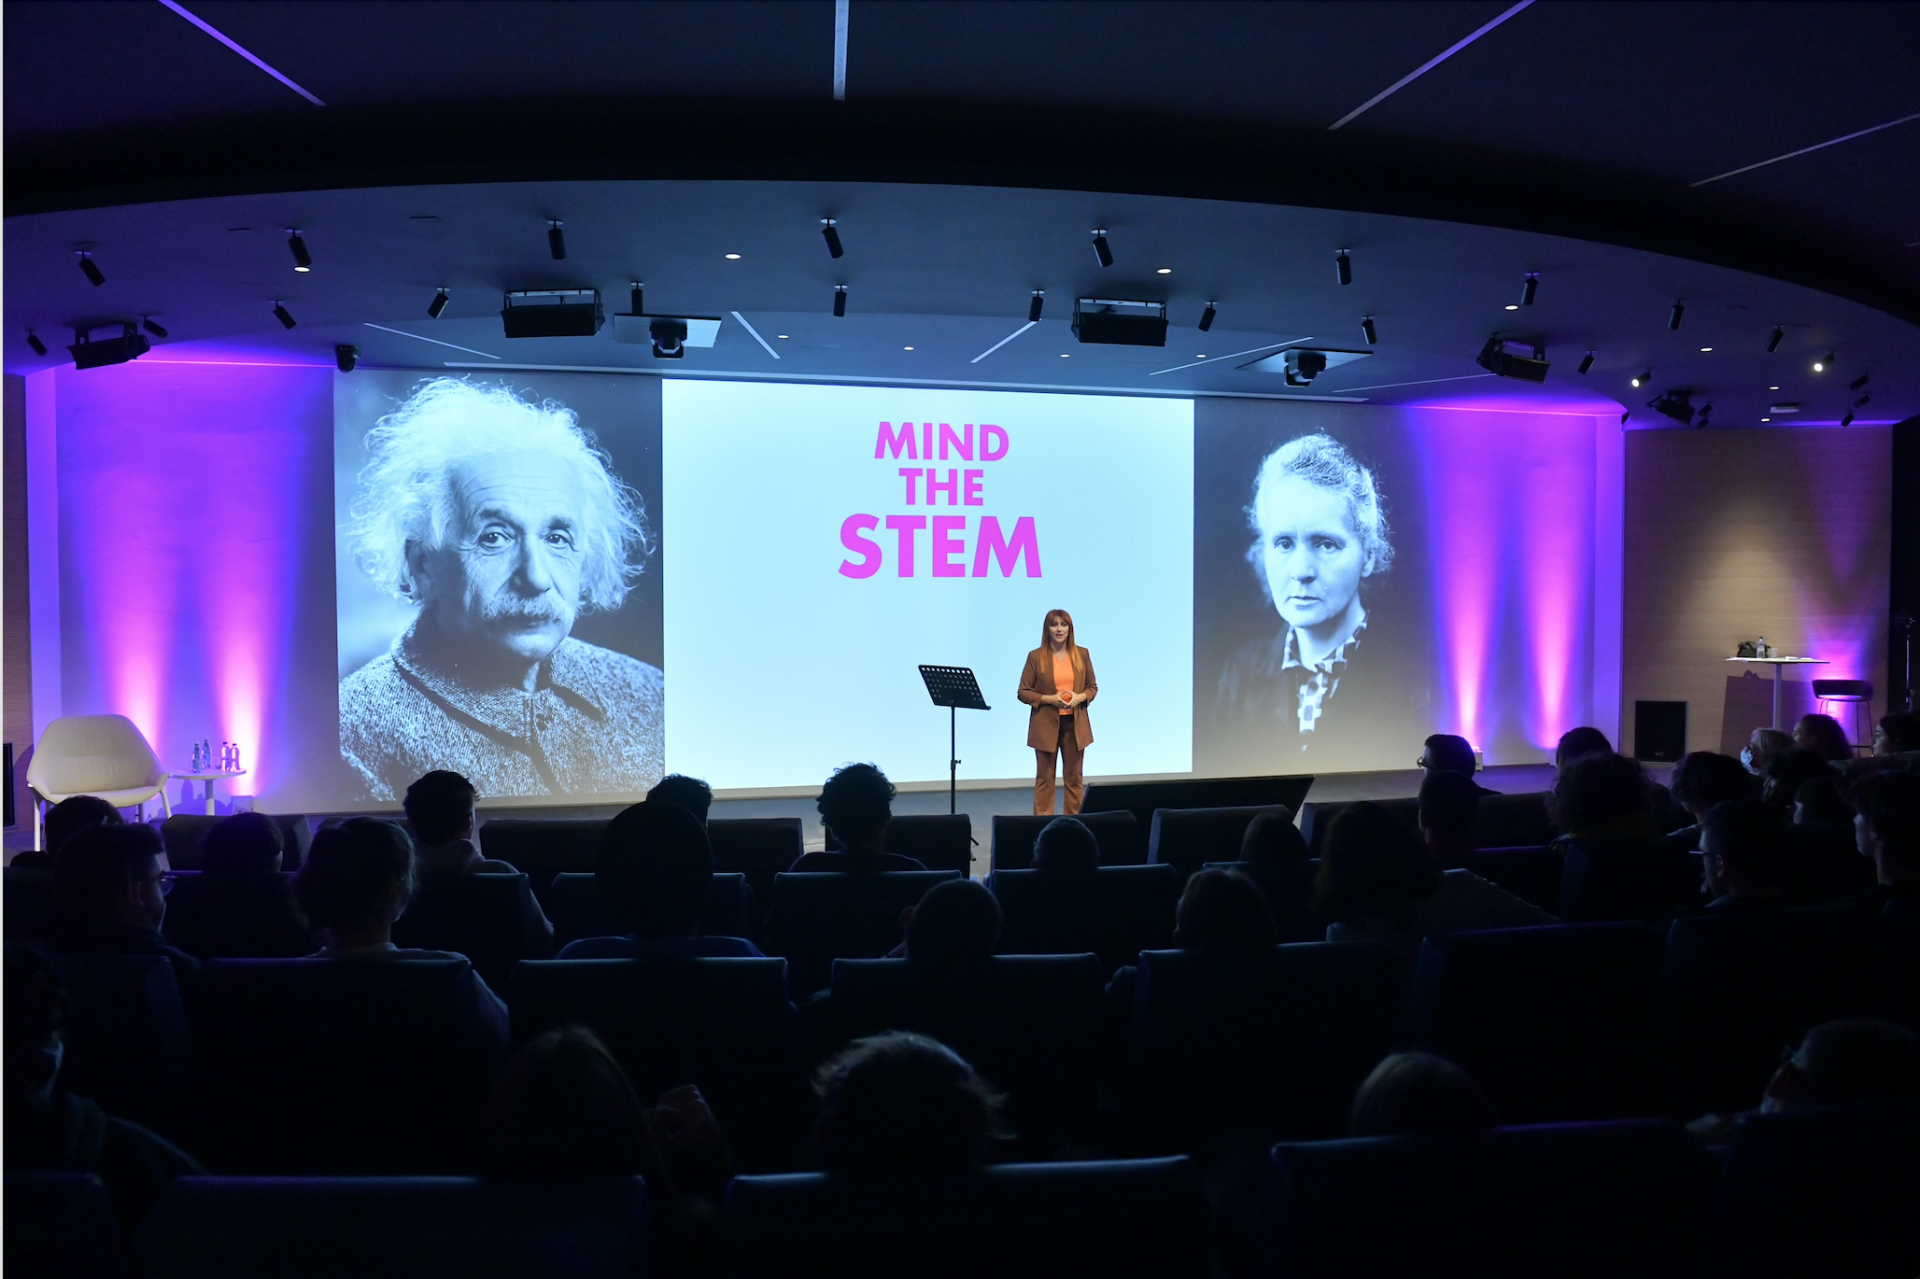 Ho moderato un evento interessante per promuovere le discipline STEM…e fatto uno speech finale chiamato ‘Mind the STEM’